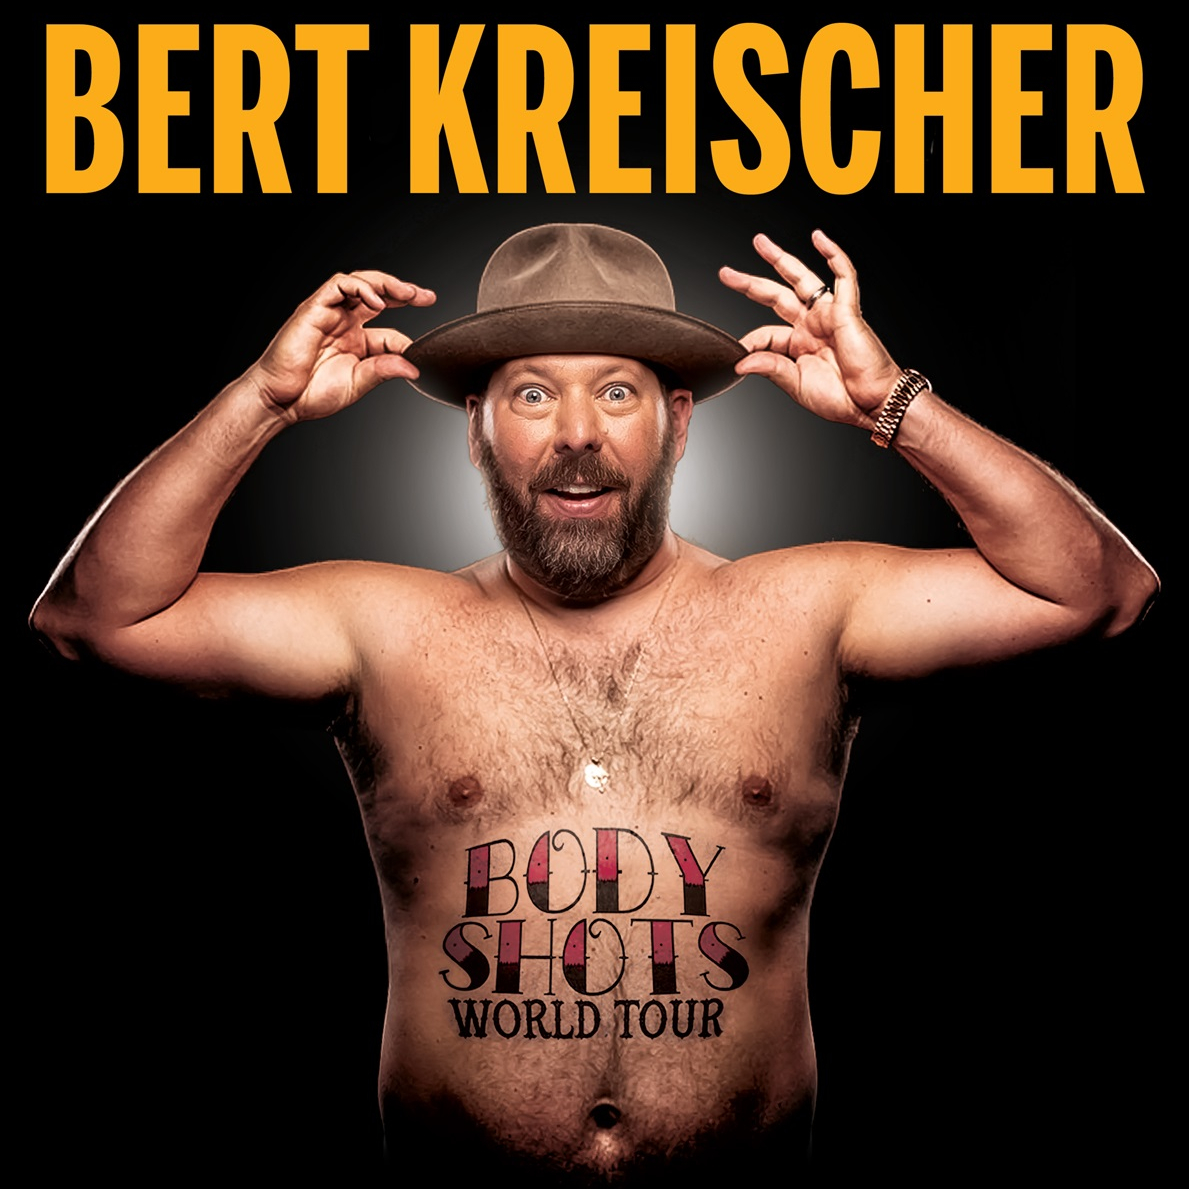 Buy Bert Kreischer tickets, Bert Kreischer tour details, Bert Kreischer